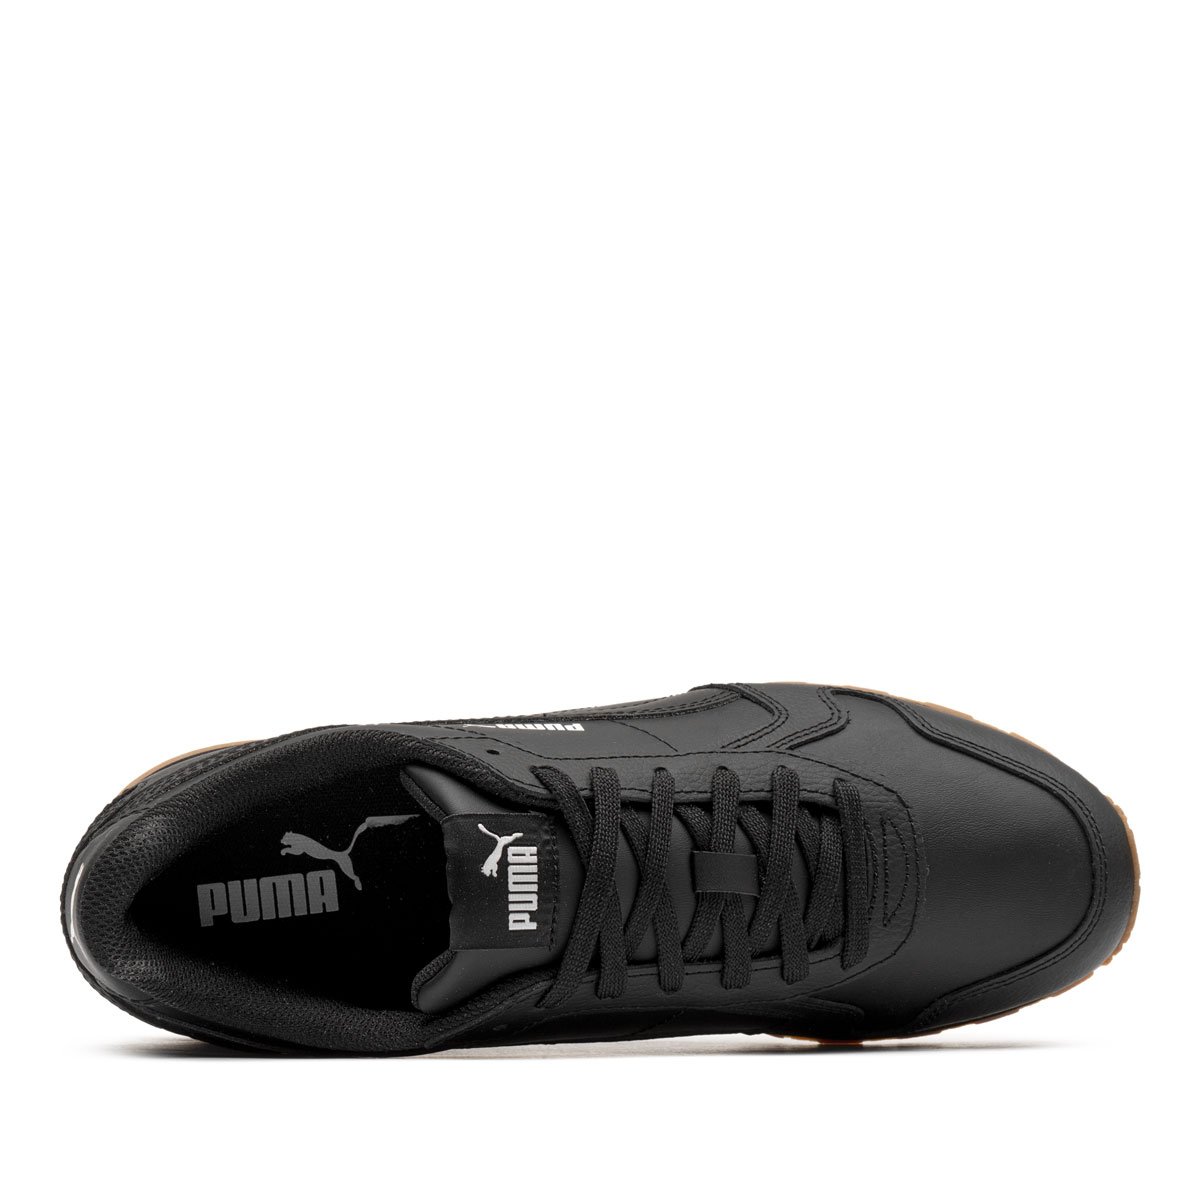 Puma ST Runner Full Leather